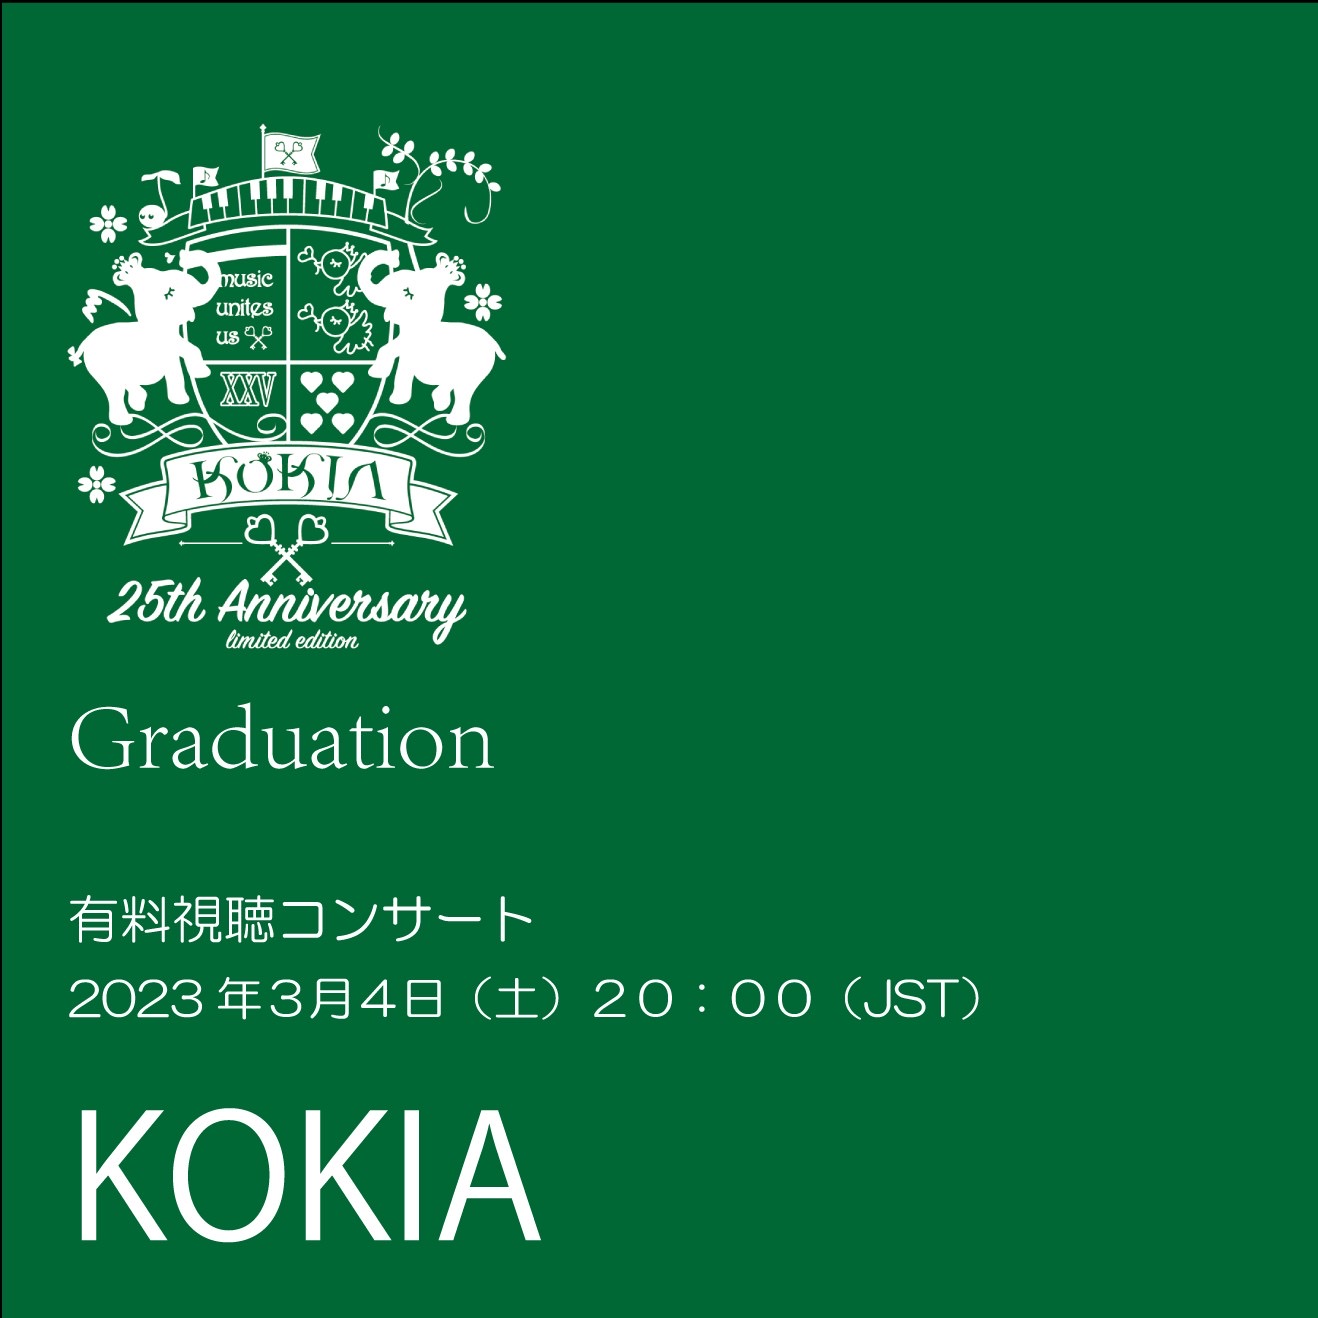 「KOKIA 過去のお宝コンサートを一緒に観よう会 第２回」有料視聴コンサート "Graduation -finally I can be KOKIA-"